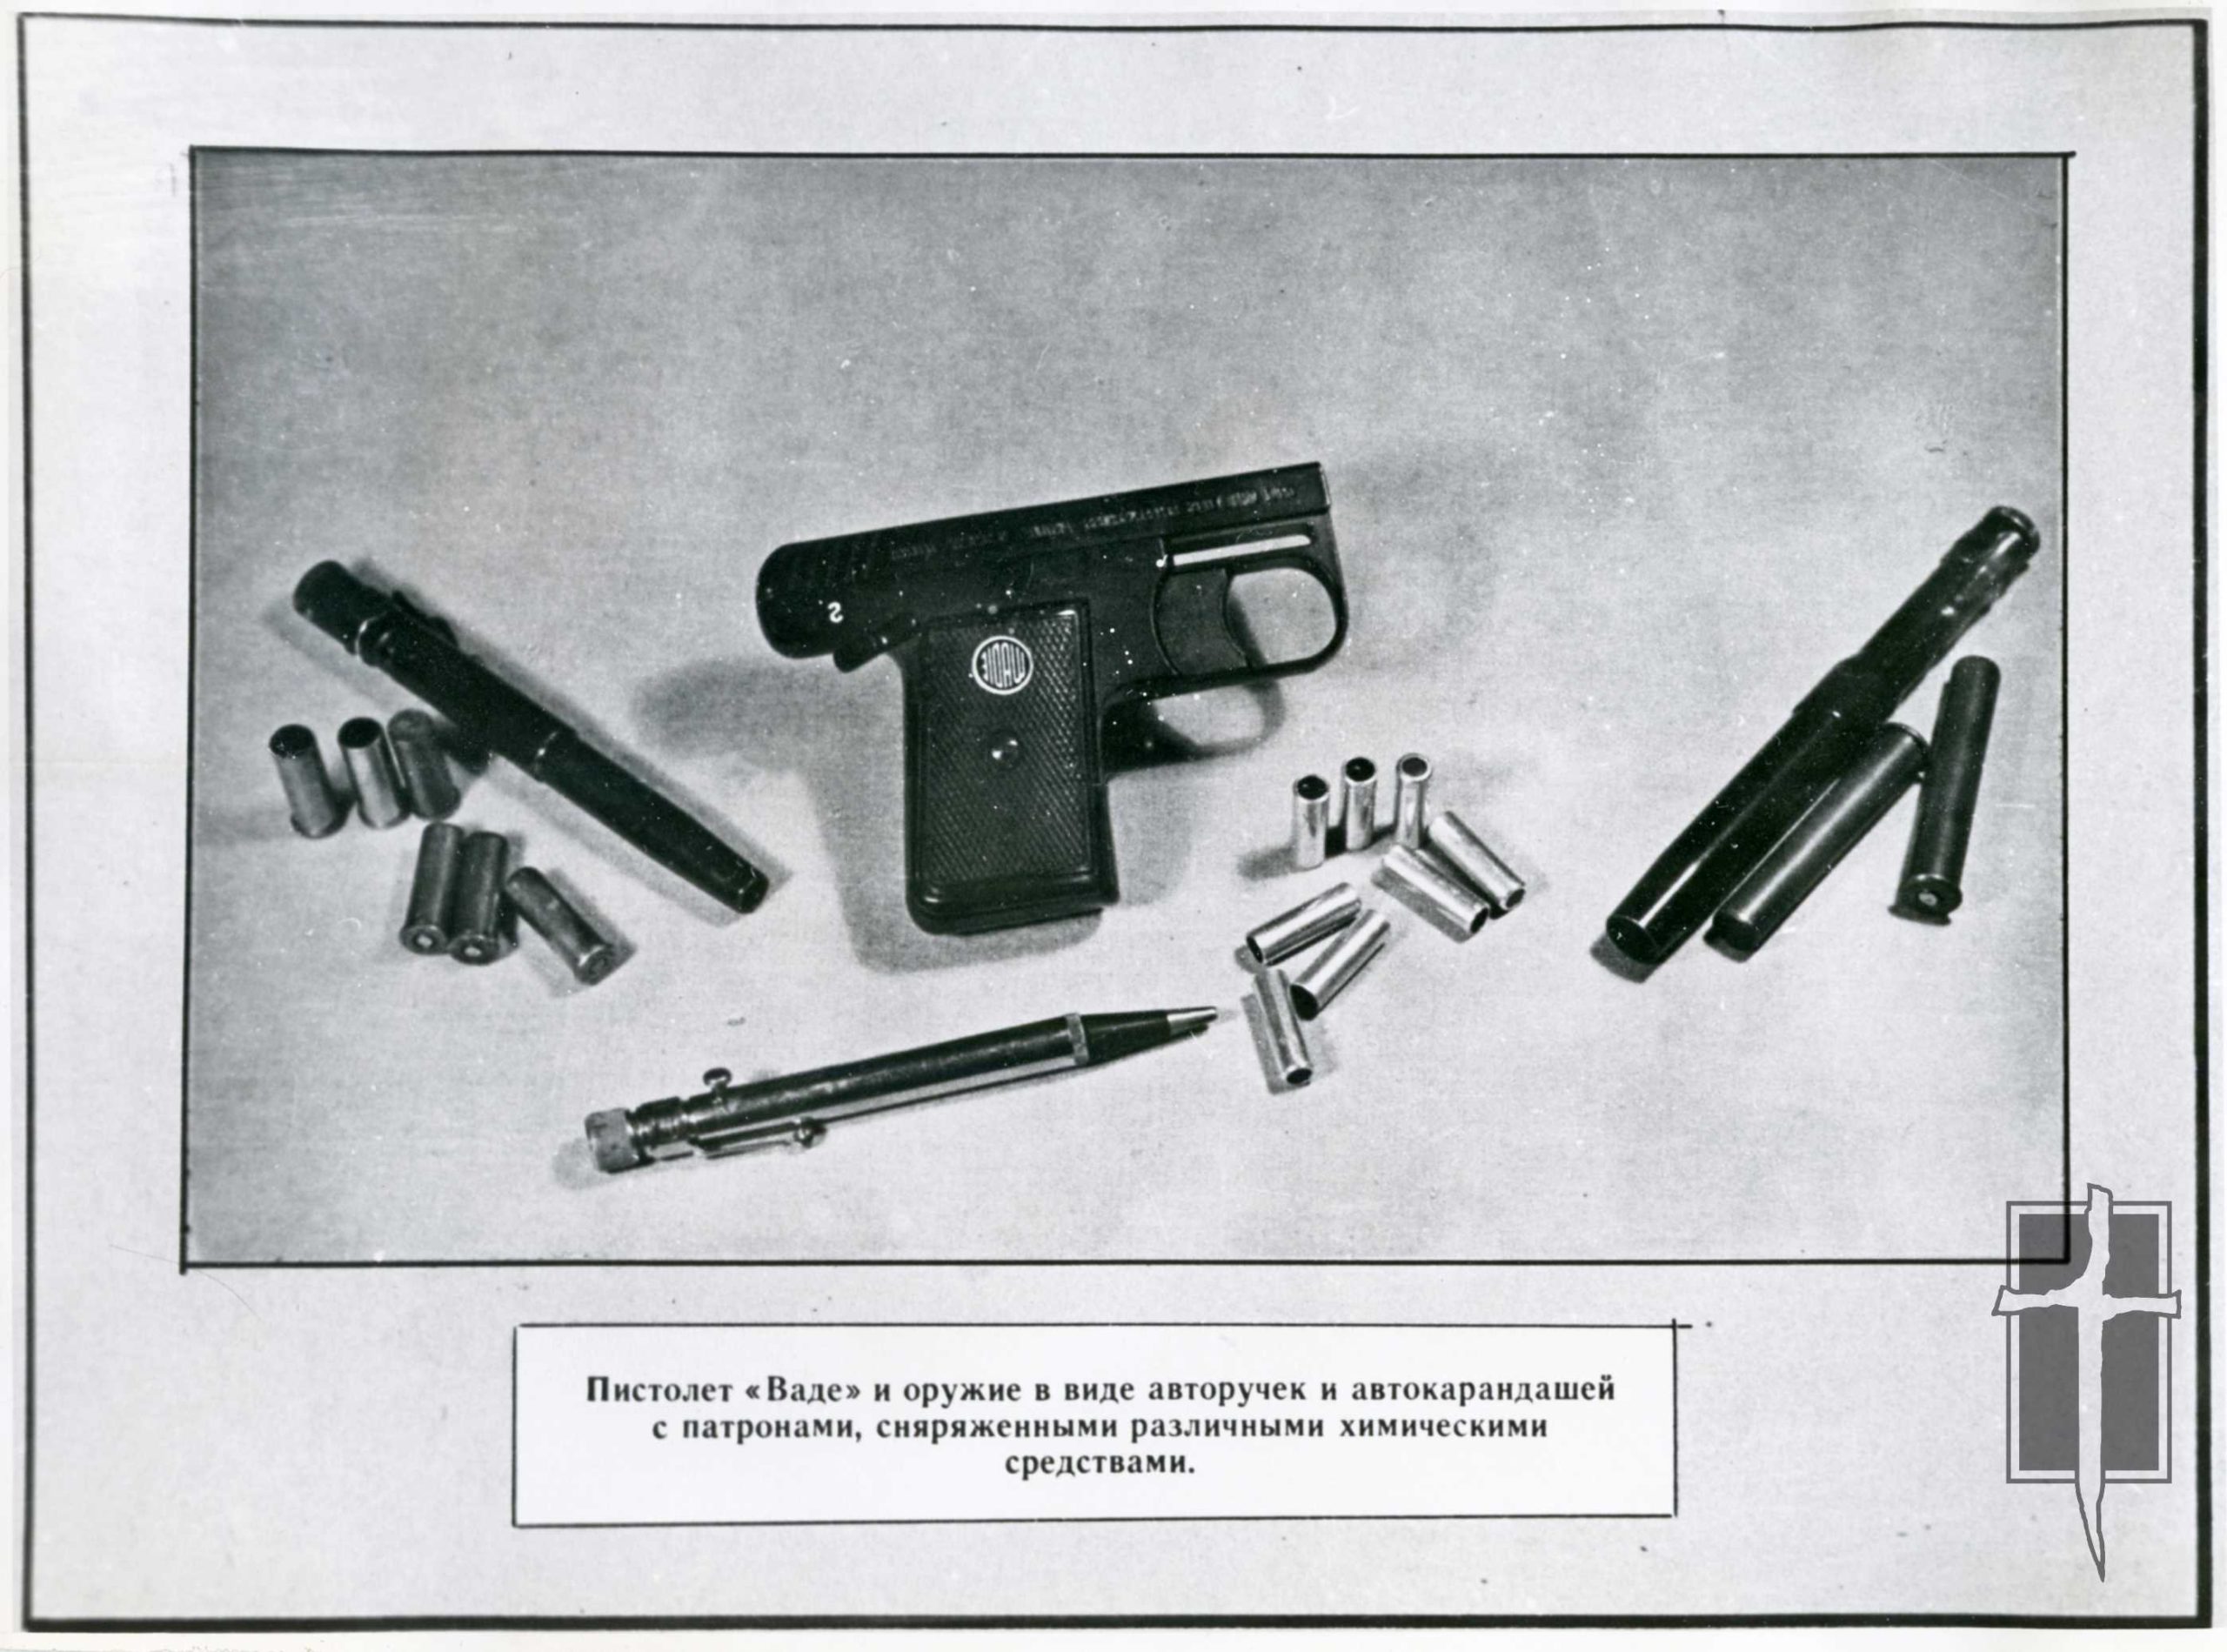  „Wadie“ modelio pistoletas ir rašiklių bei automatinių pieštukų pavidalo ginklai su įvairiais cheminiais preparatais užtaisytais šoviniais“ | LGGRTC archyvo nuotr.